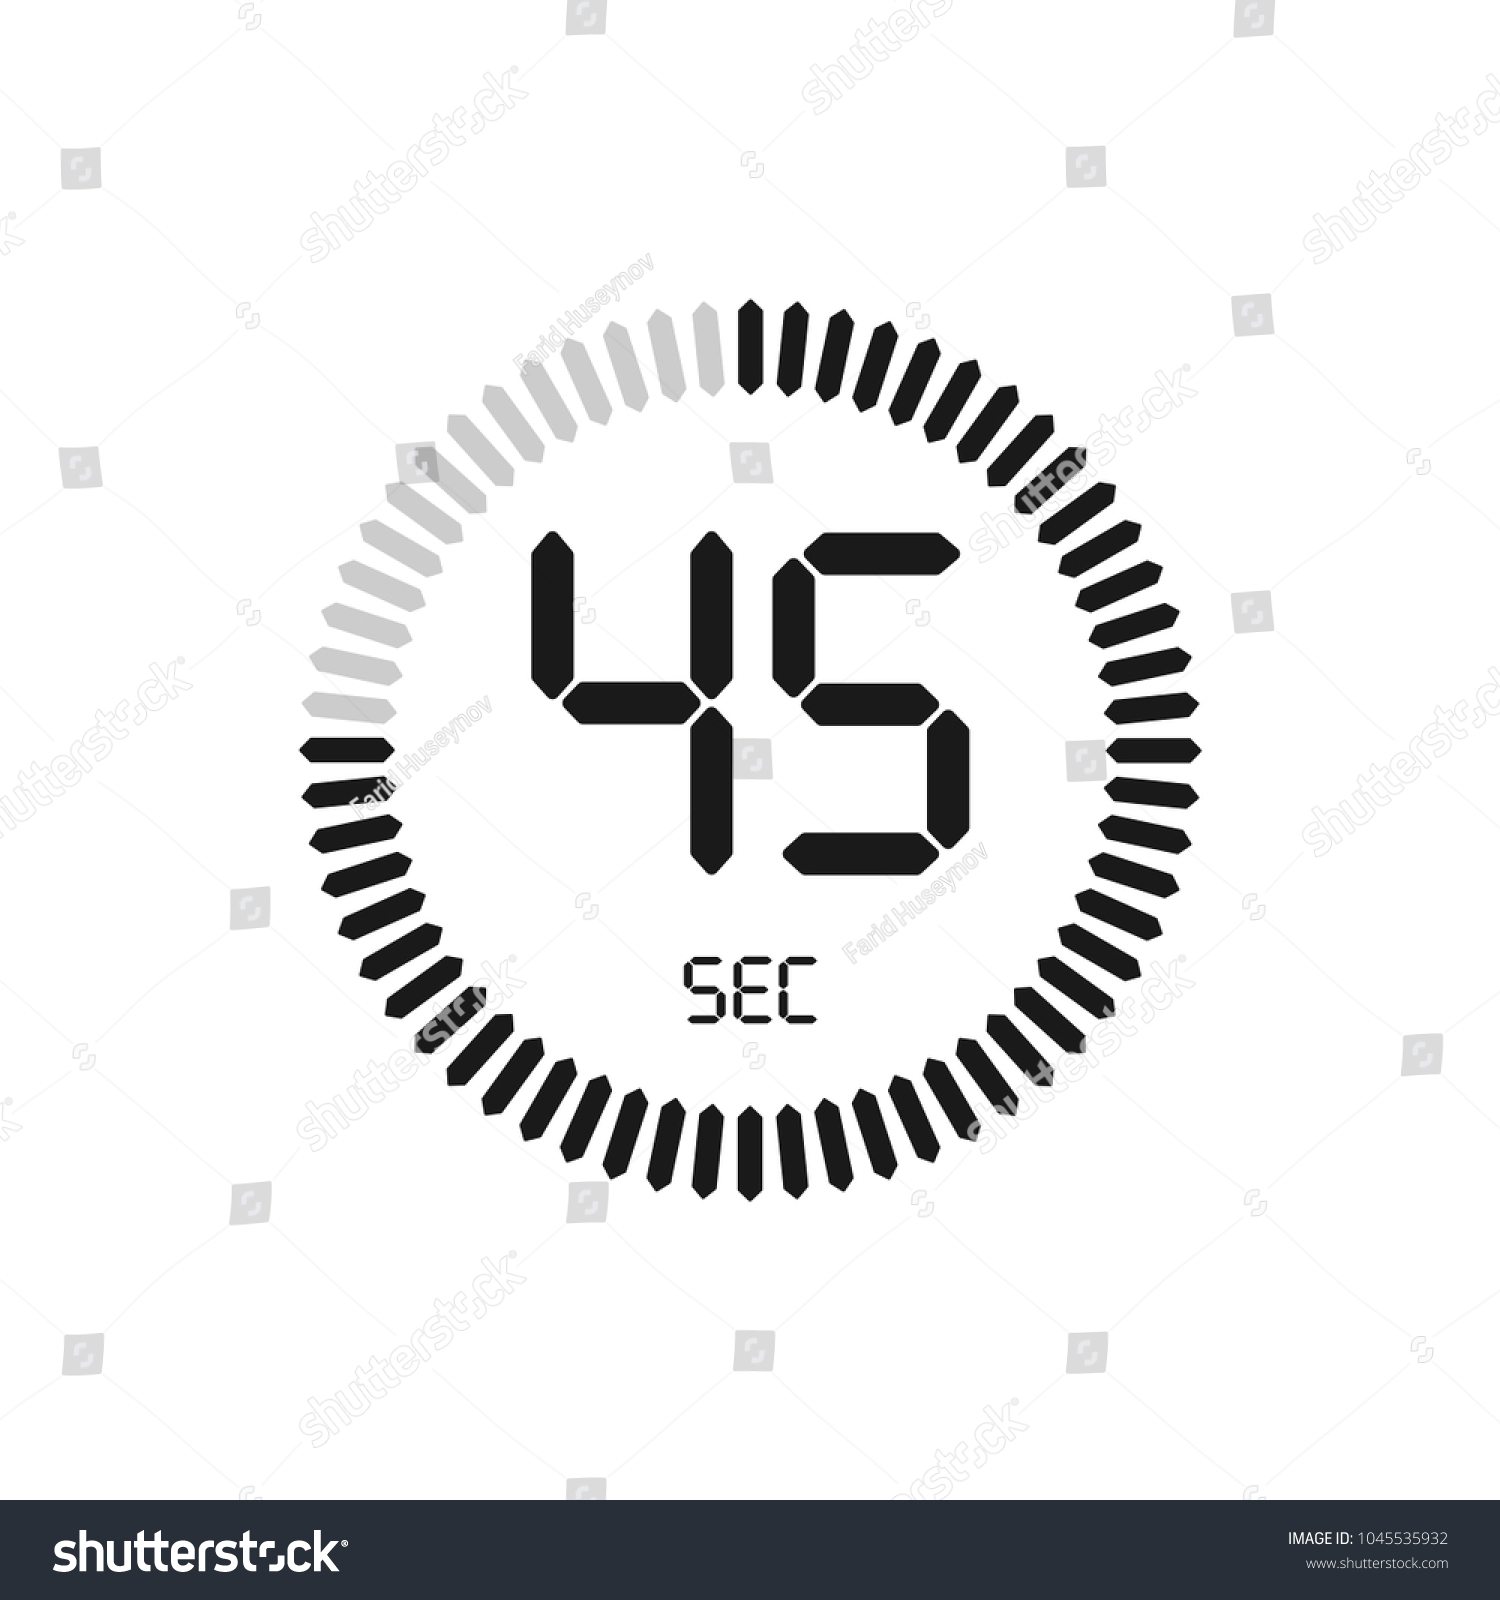 45秒 ストップウォッチベクター画像アイコン デジタルタイマー 時計と時計 タイマー カウントダウン記号 のベクター画像素材 ロイヤリティフリー Shutterstock